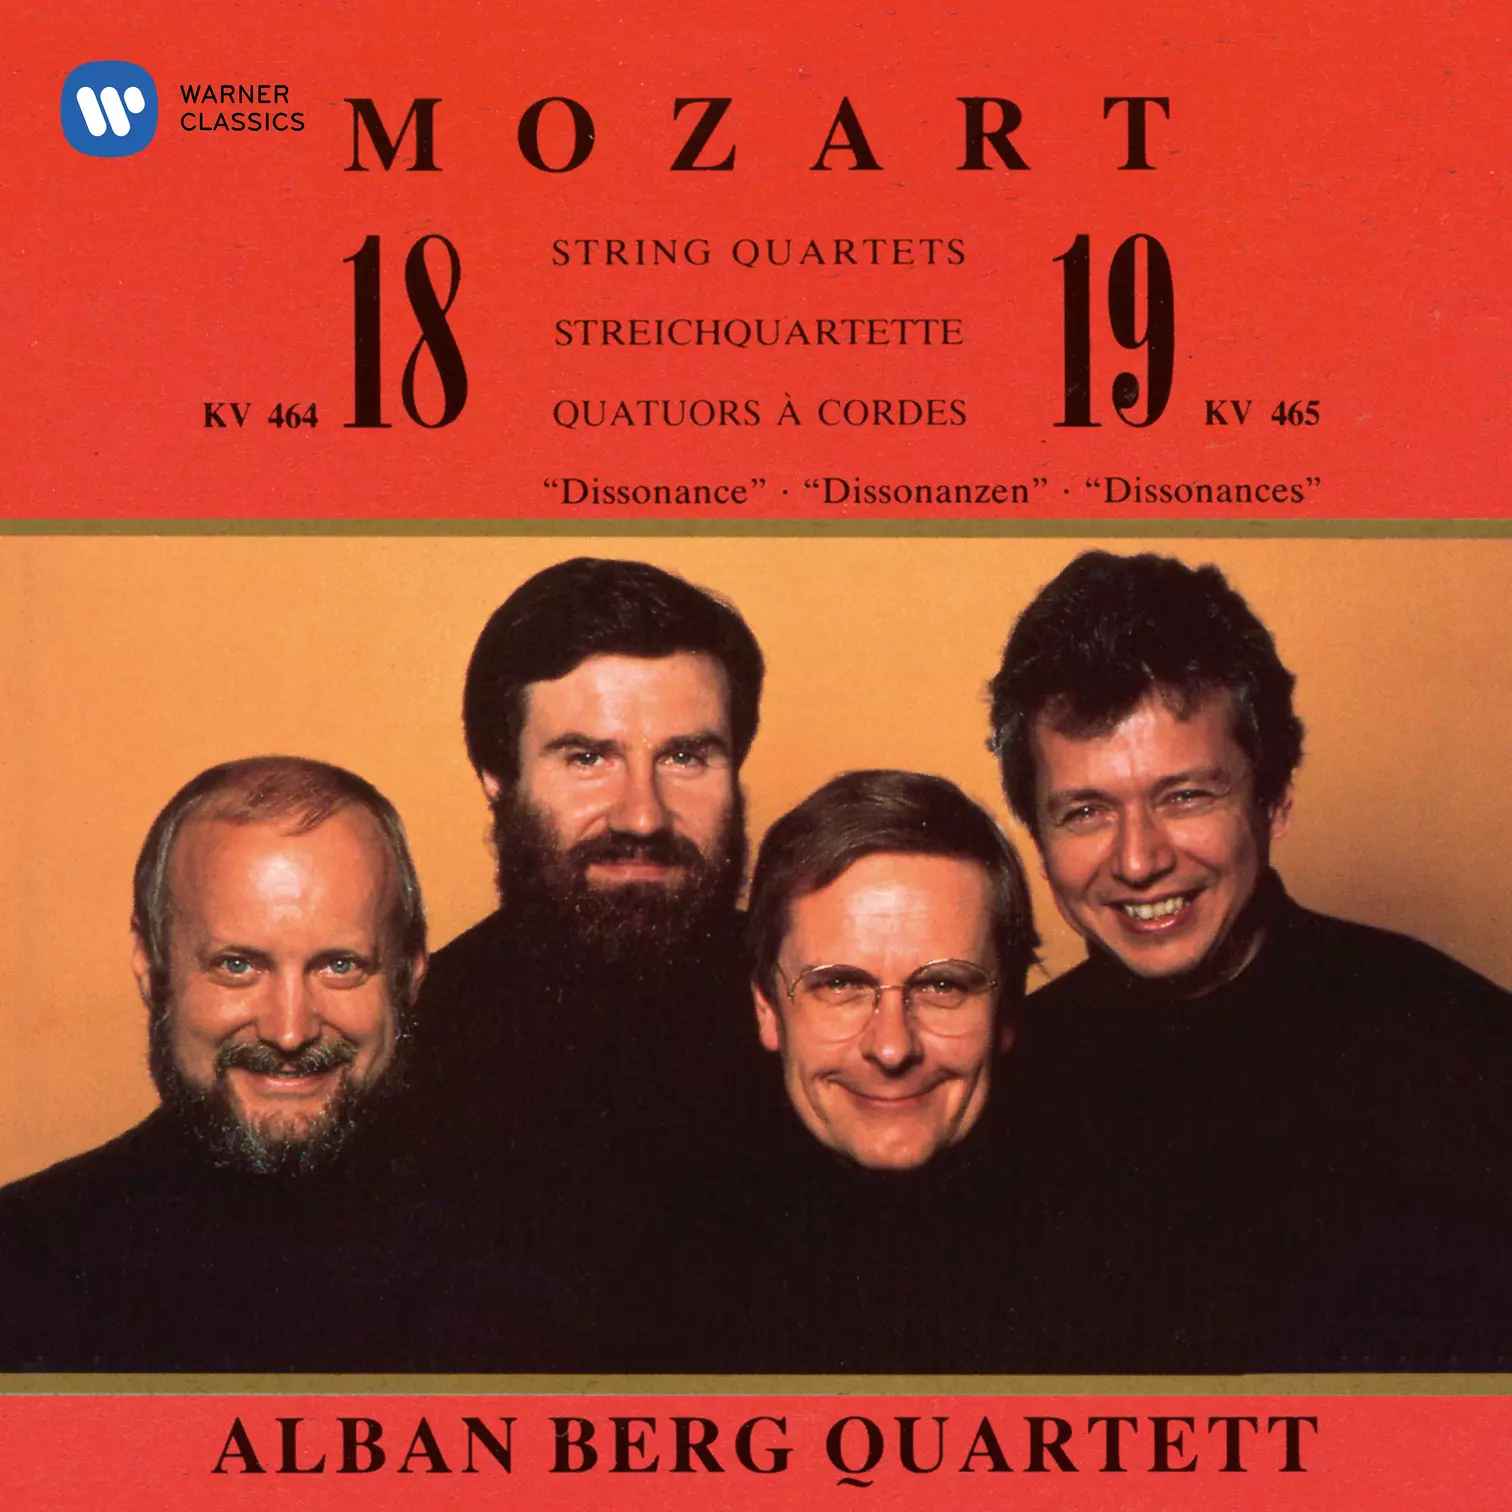 Mozart: String Quartets Nos. 18 & 19 “Dissonance”